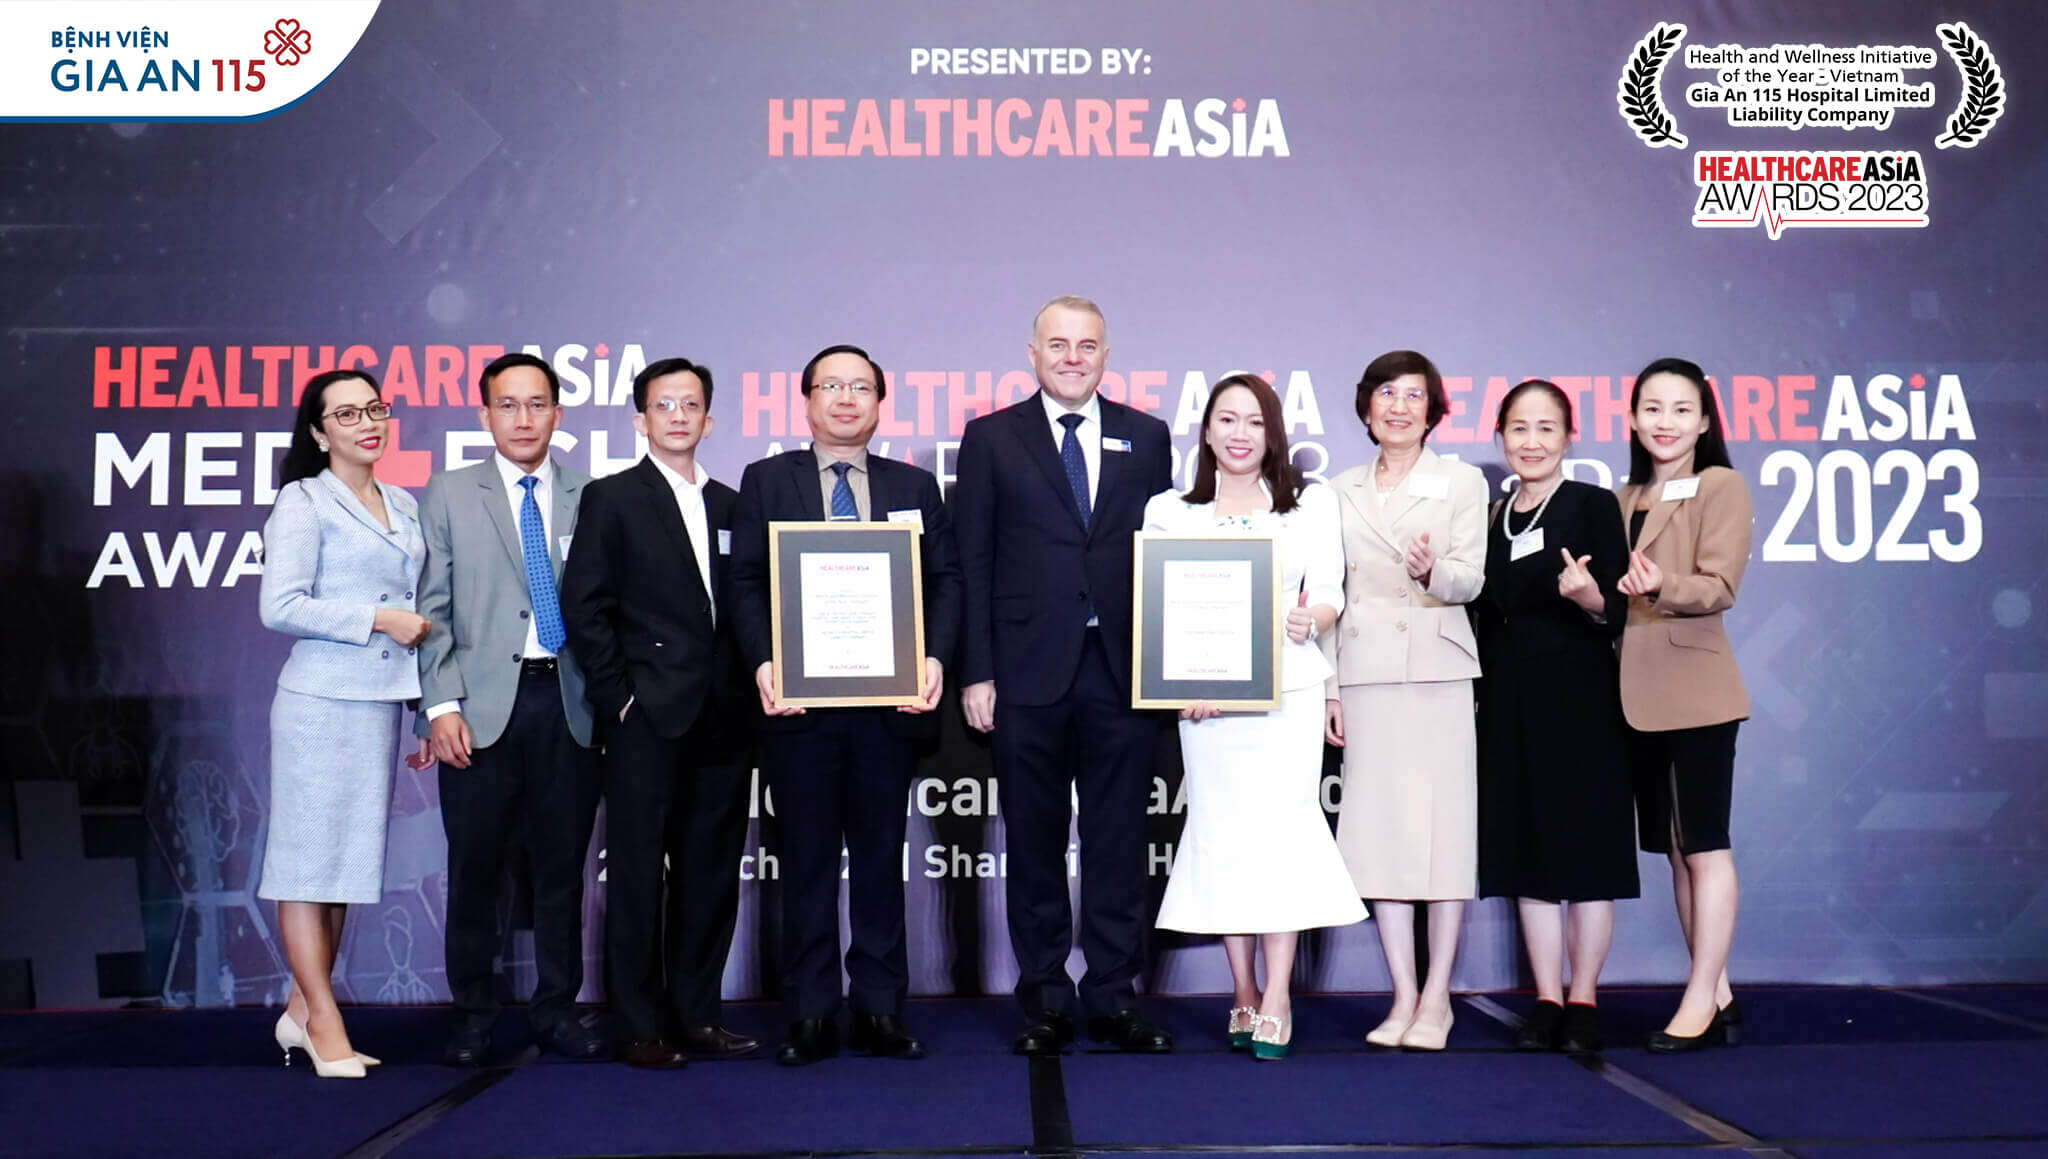 Bệnh viện Gia An 115 cùng Bệnh viện Quốc tế City (CIH) là hai bệnh viện tư nhân thuộc Tập đoàn Hoa Lâm xuất sắc đạt giải thưởng này